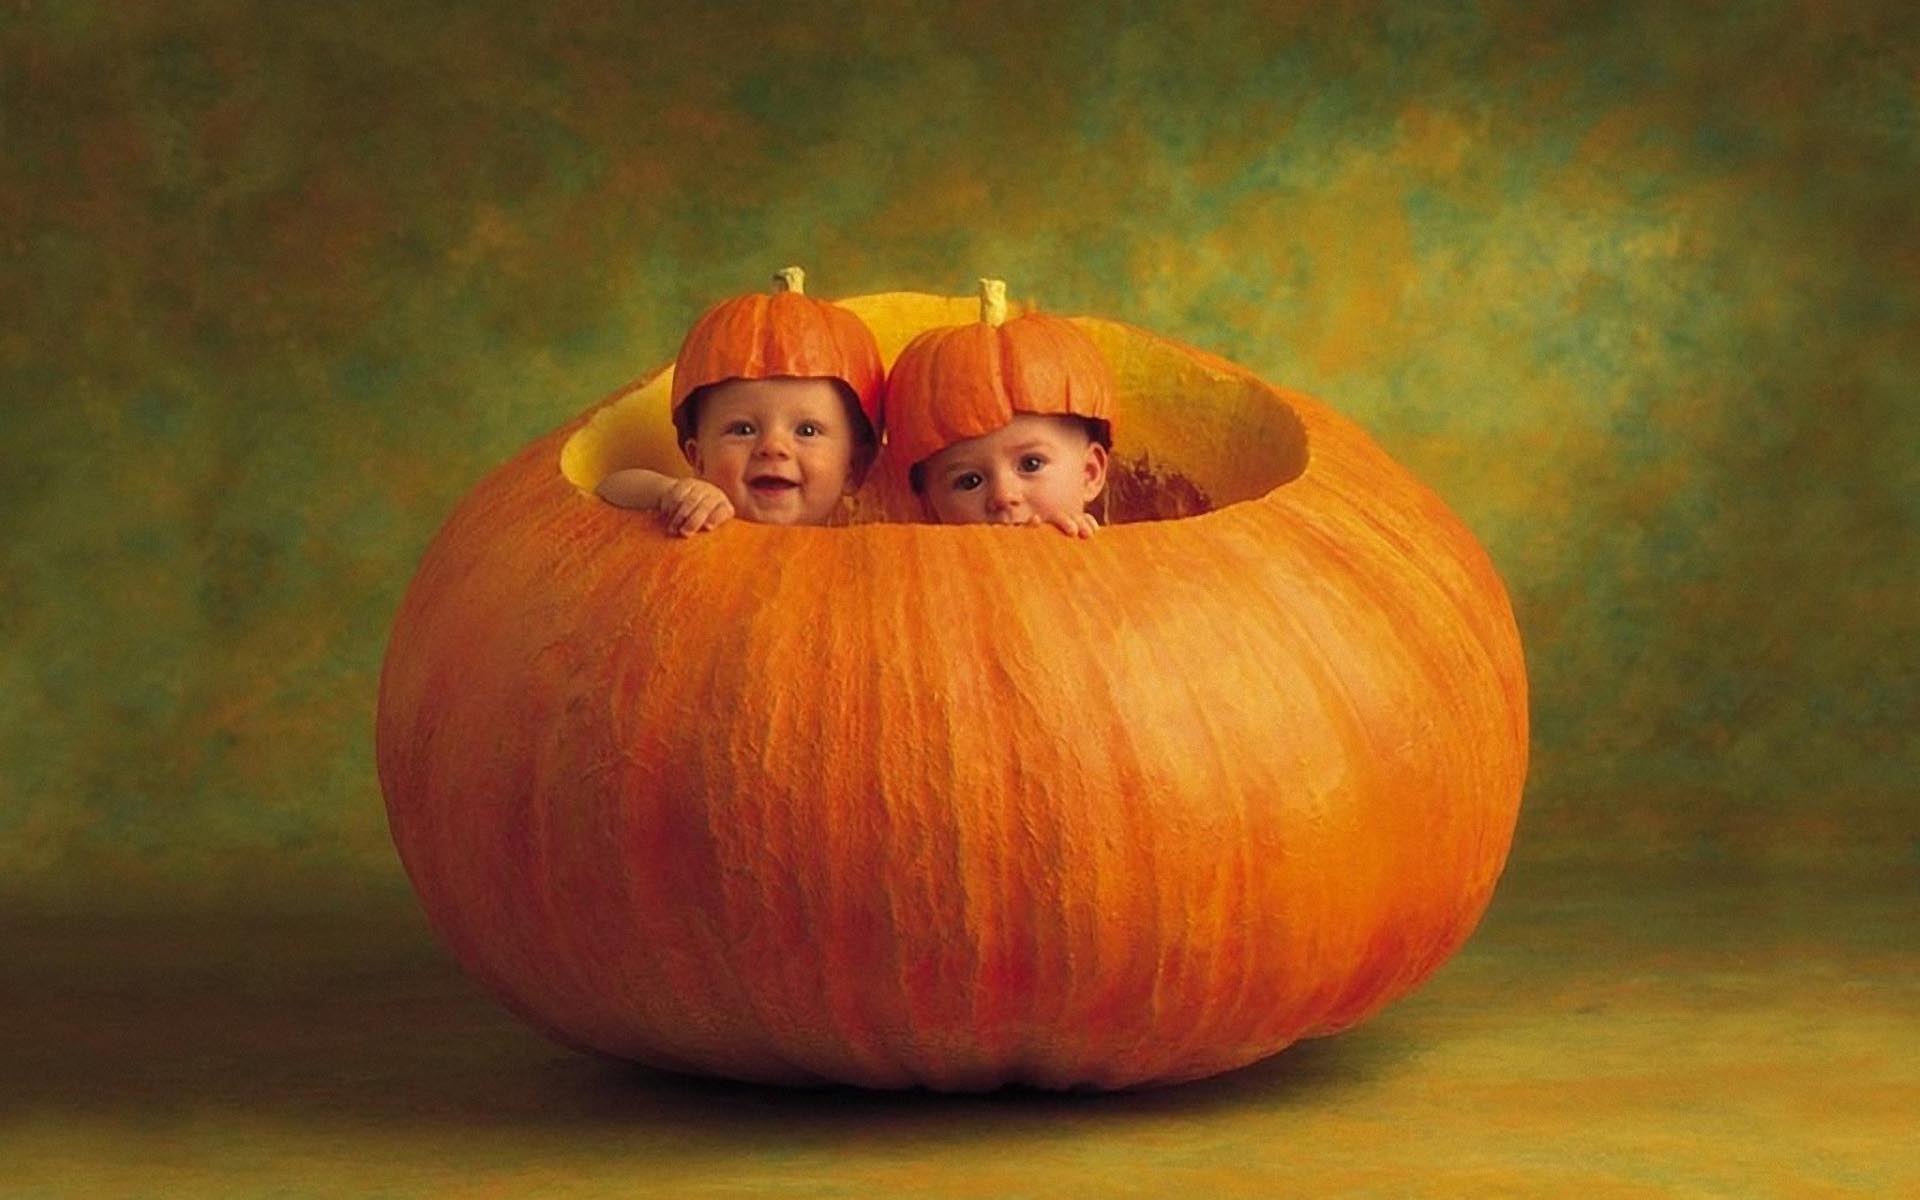 Babies in a Pumpkin 1920x1200 Wallpaper, 1920x1200 Wallpaper